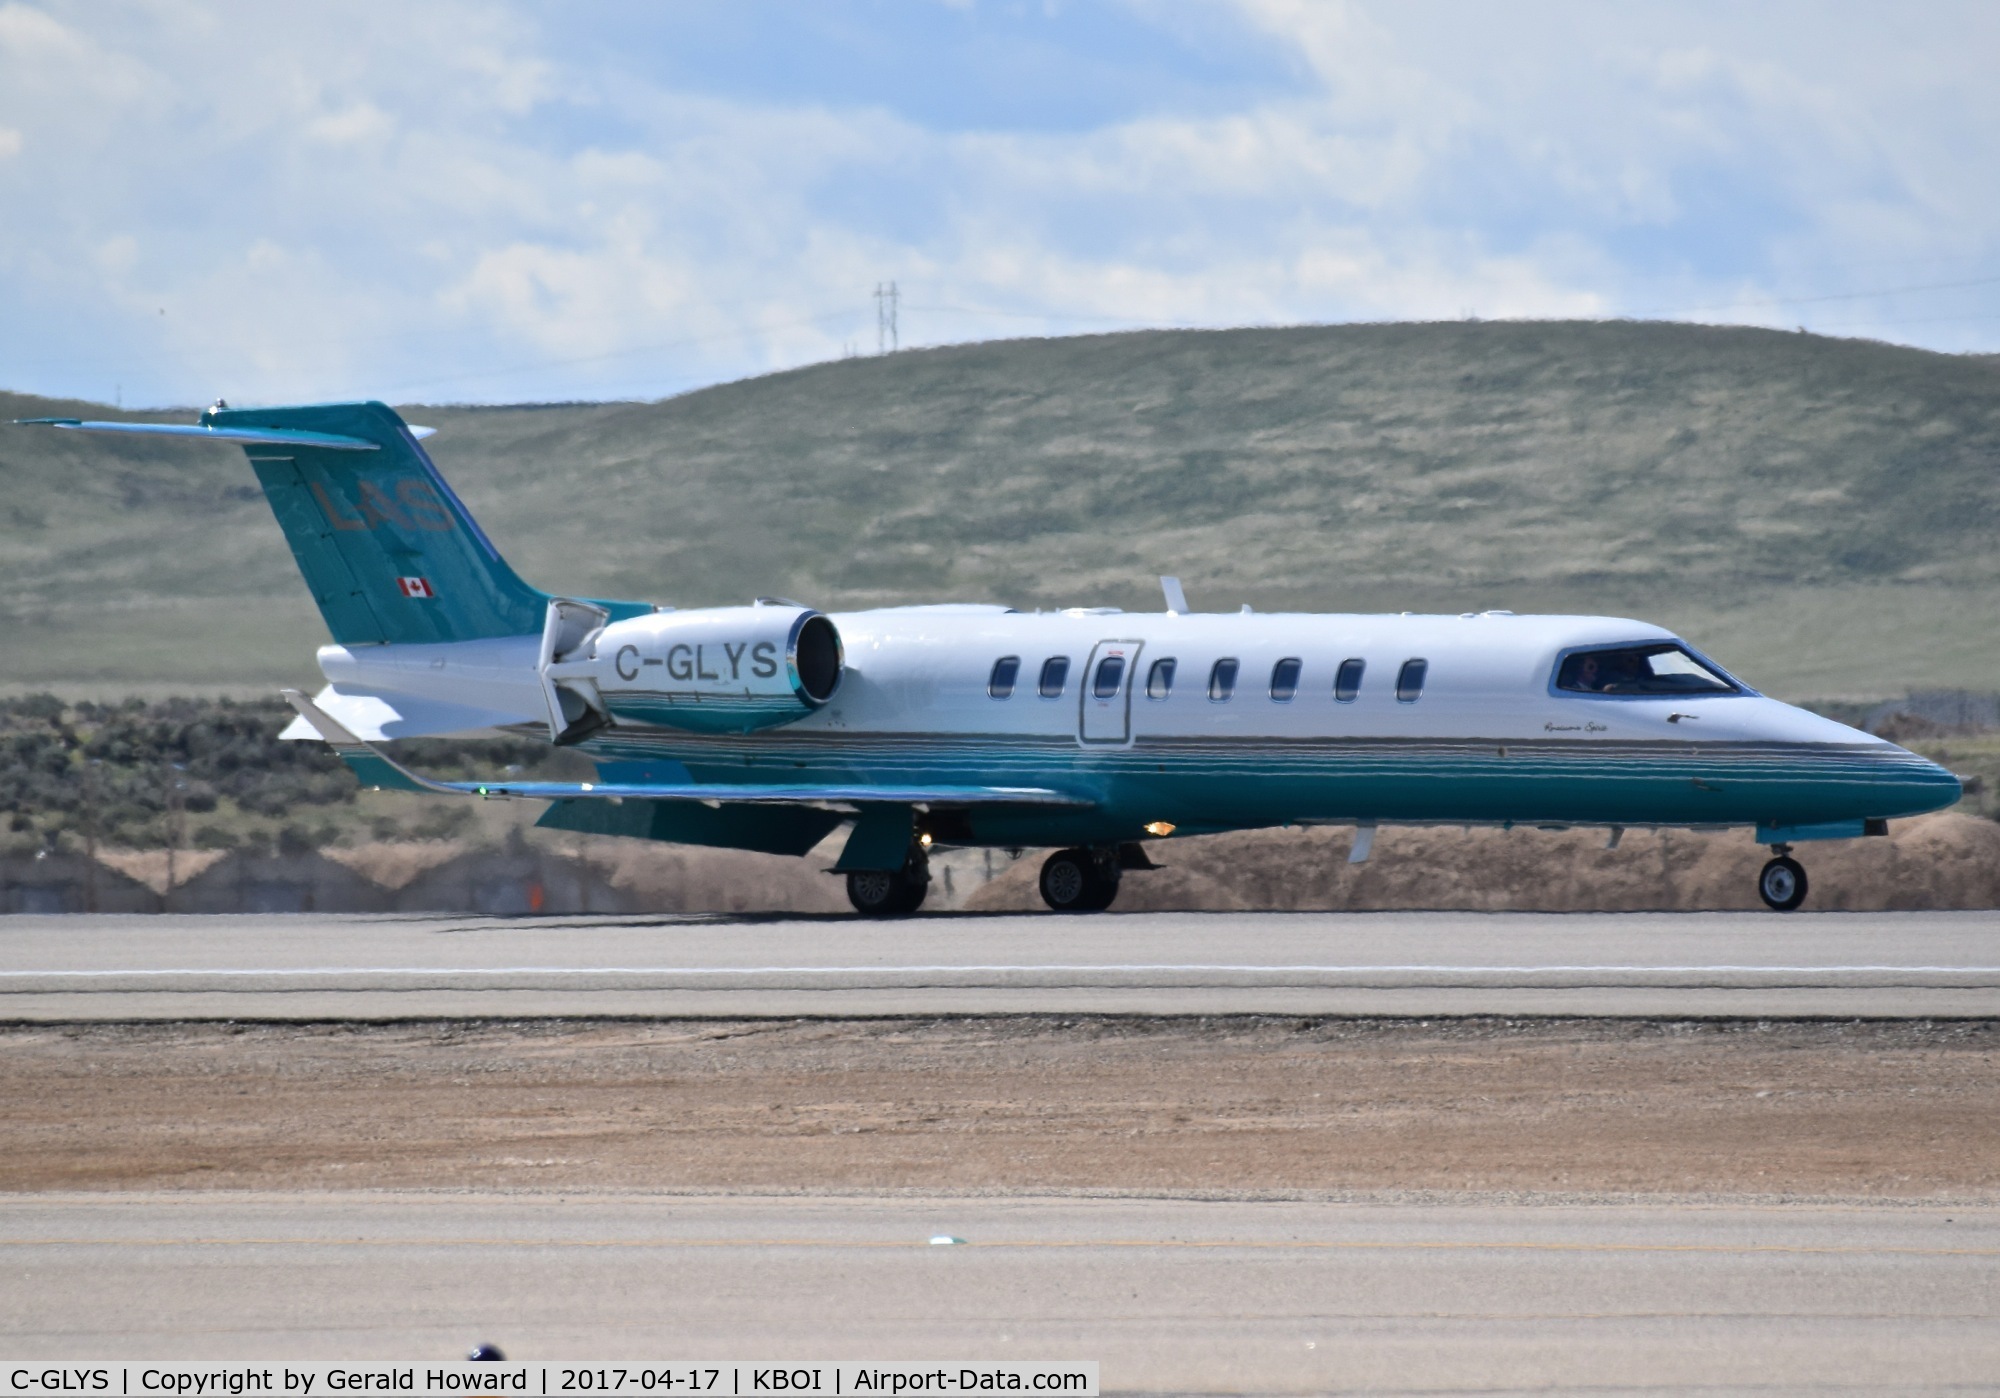 C-GLYS, 2013 Learjet 45 C/N 45-465, Landing on RWY 28R.